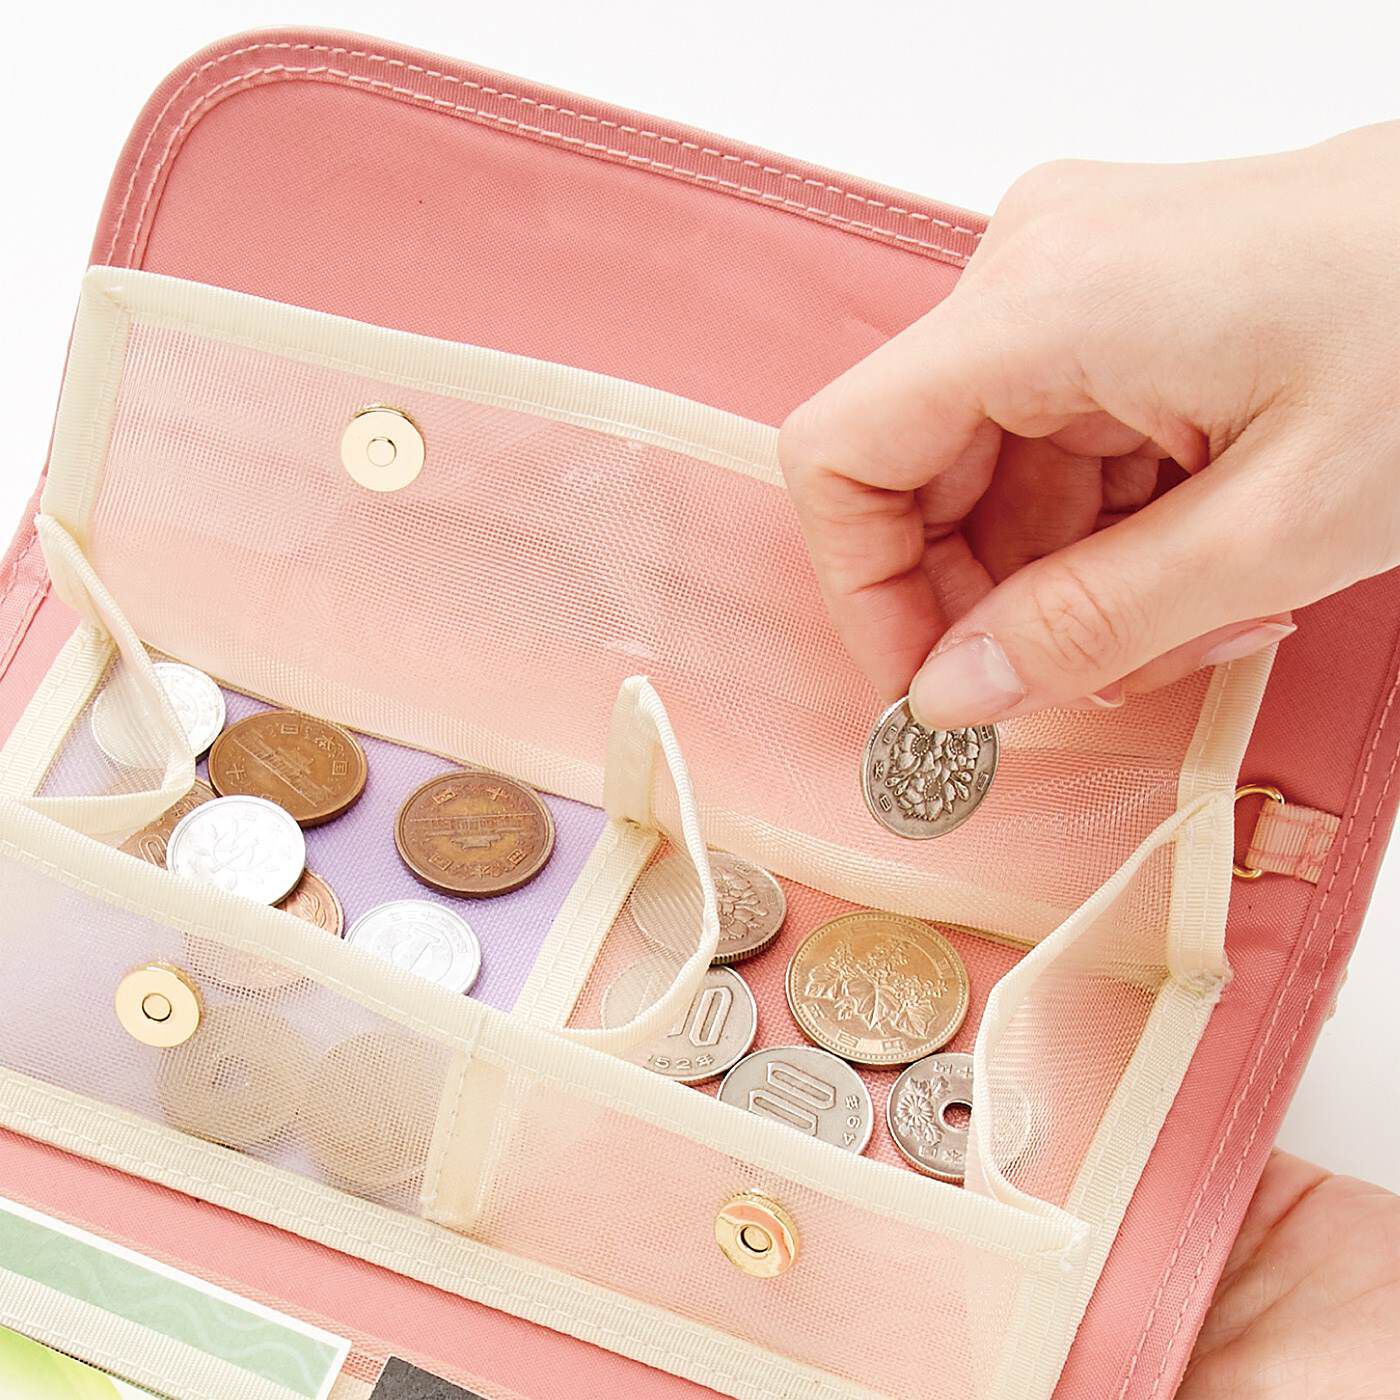 Real Stock|LITALICO×CCP　見渡しやすさ＆つかみ取りやすさ抜群 スマホも入る透けるメッシュ財布〈ピンク〉|小銭入れもマグネットボタン式。がばっと開いてコインをつかみやすい。